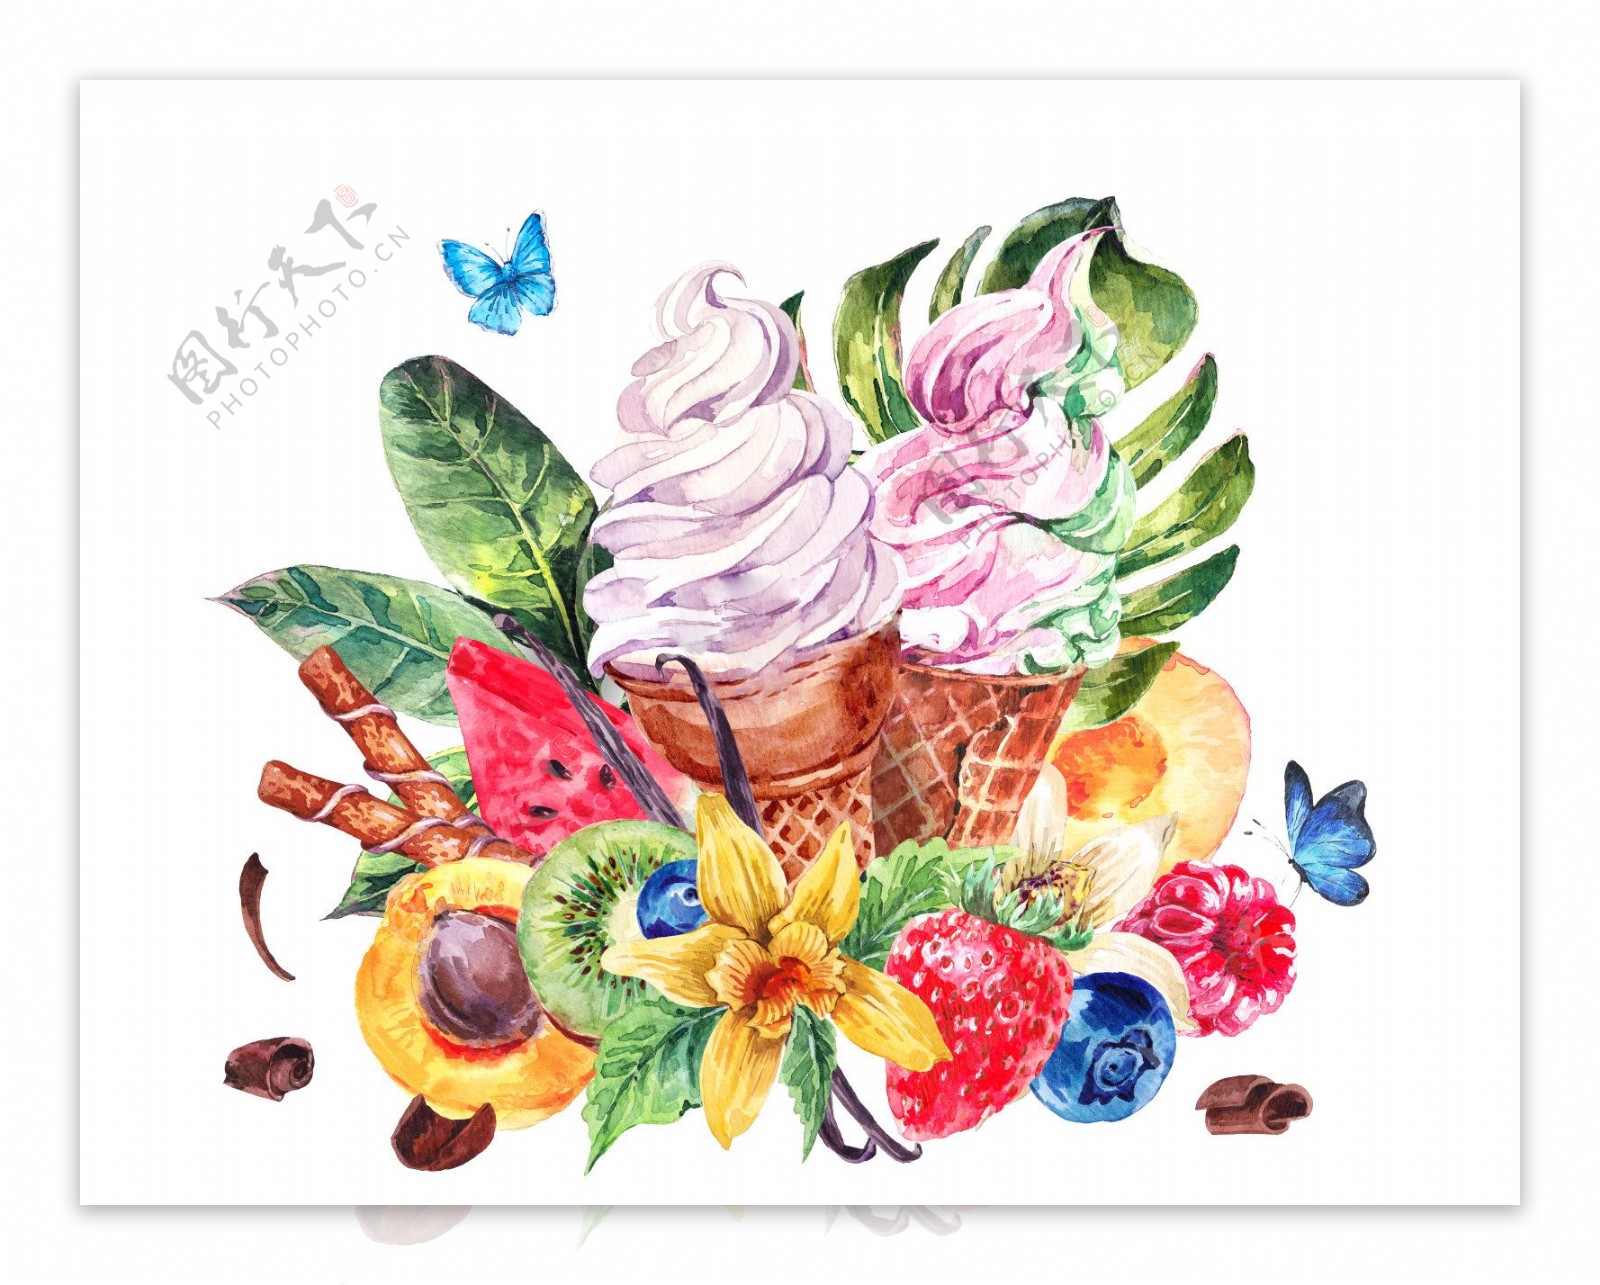 鲜花冰淇淋锥 库存图片. 图片 包括有 奶油, 夫妇, 母亲, 粉红色, 花瓣, 妈妈, 本质, 问候 - 218512993